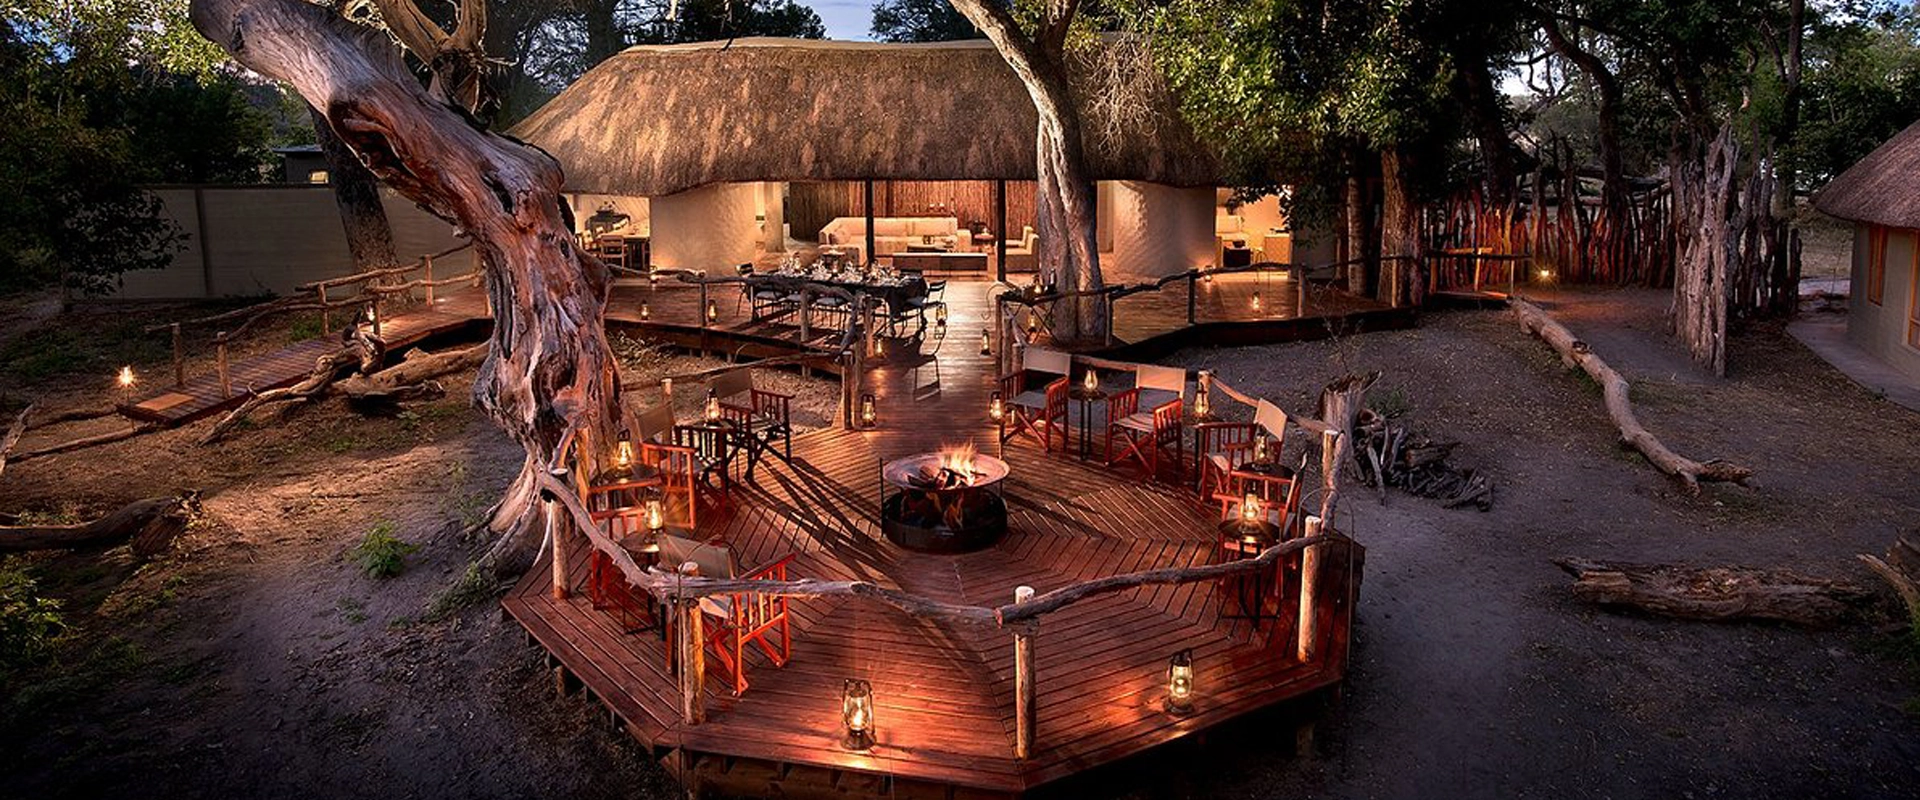 Safari botswana luxe khwai bush camp